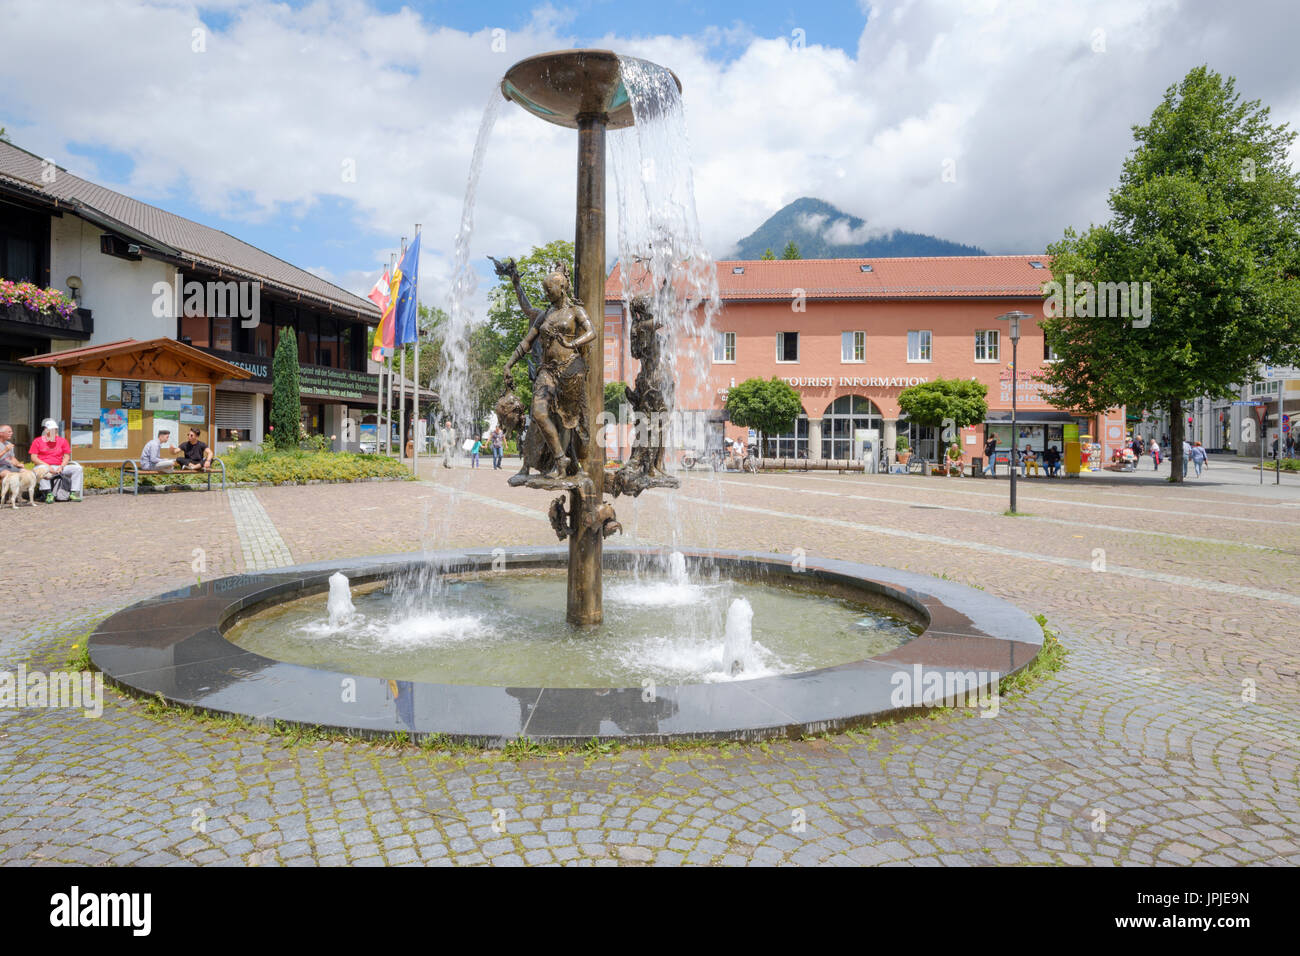 Am Kurpark in Garmisch town centre, Garmisch-Partenkirchen, Bavaria, Germany Stock Photo